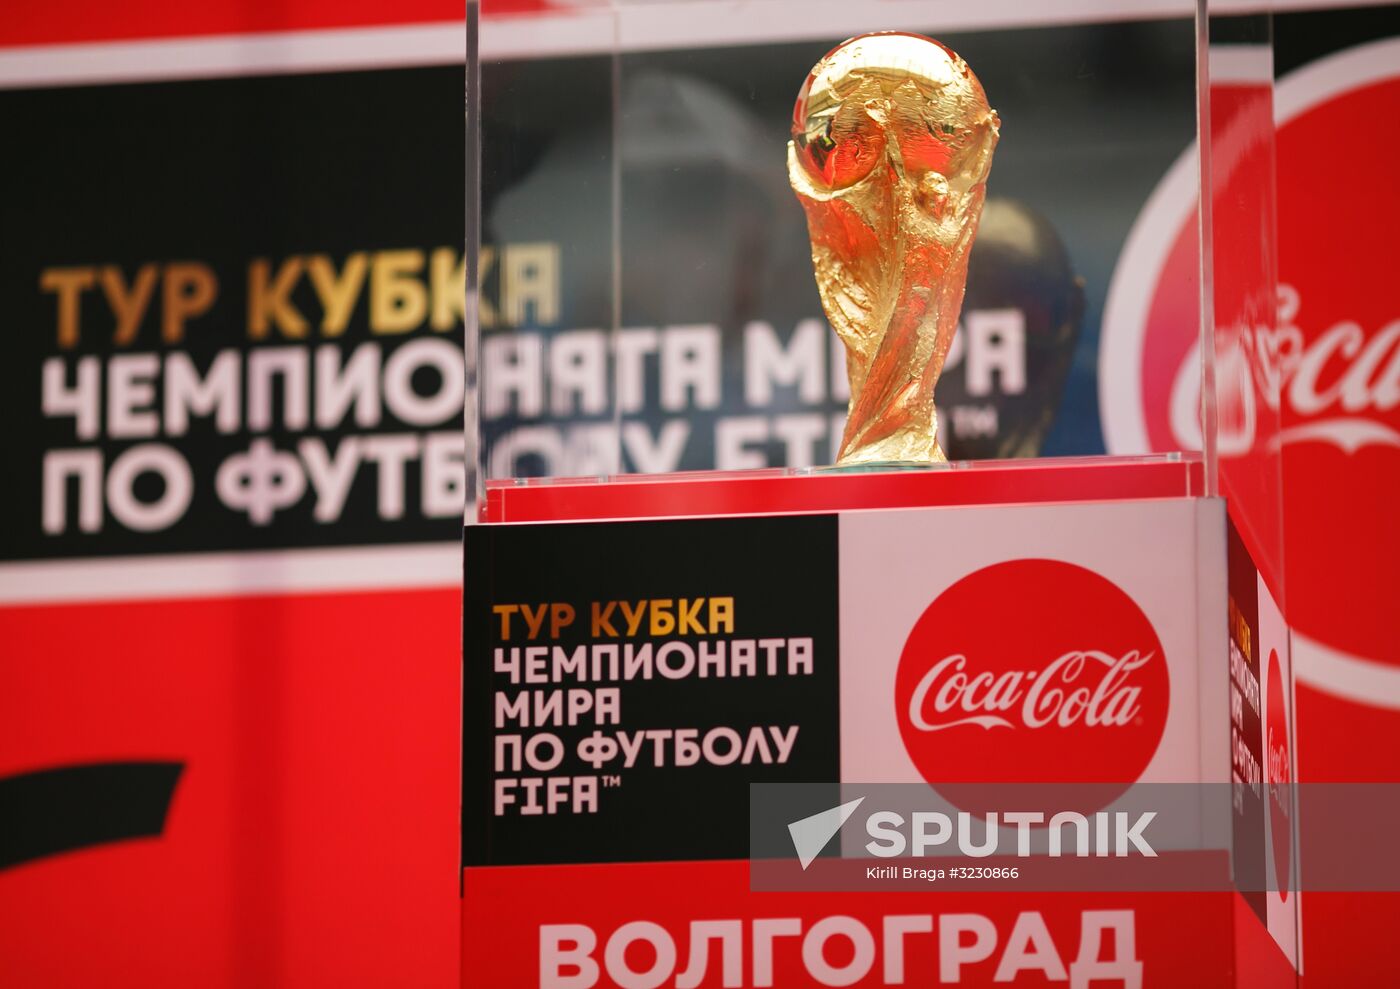 2018 FIFA World Cup trophy presented in Volgograd